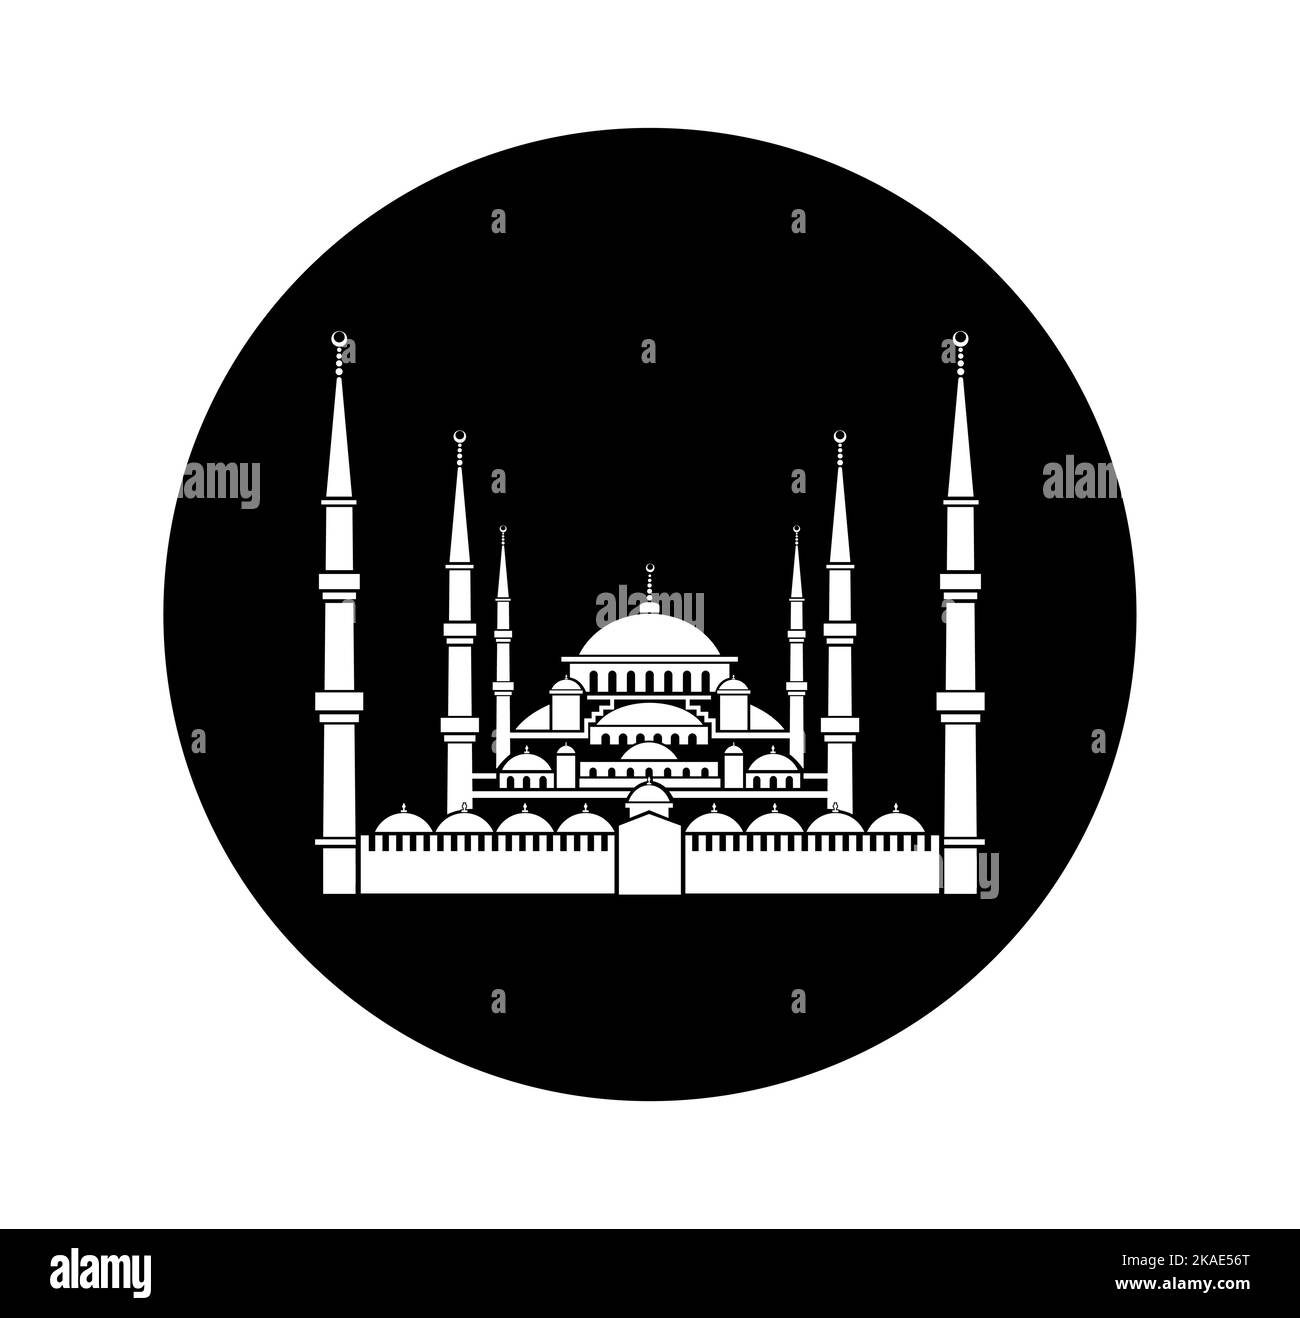 Icona vettoriale della Moschea del Sultano Amhamed. Illustrazione vettoriale in bianco e nero della Moschea del Sultano Amhamed. Icona della Moschea Blu. Illustrazione Vettoriale